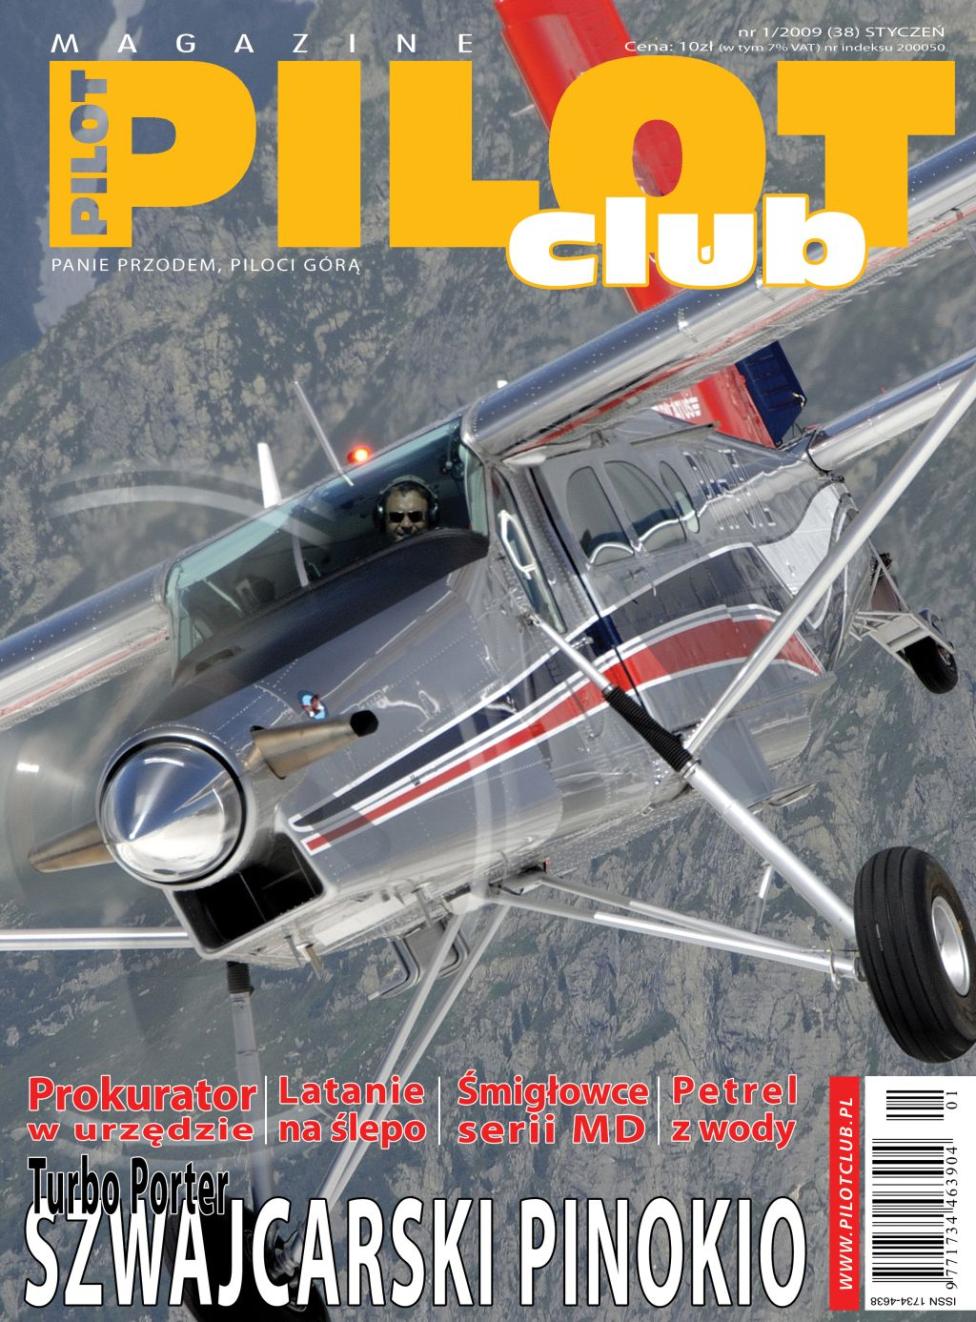 Styczniowy Pilot Club Magazine